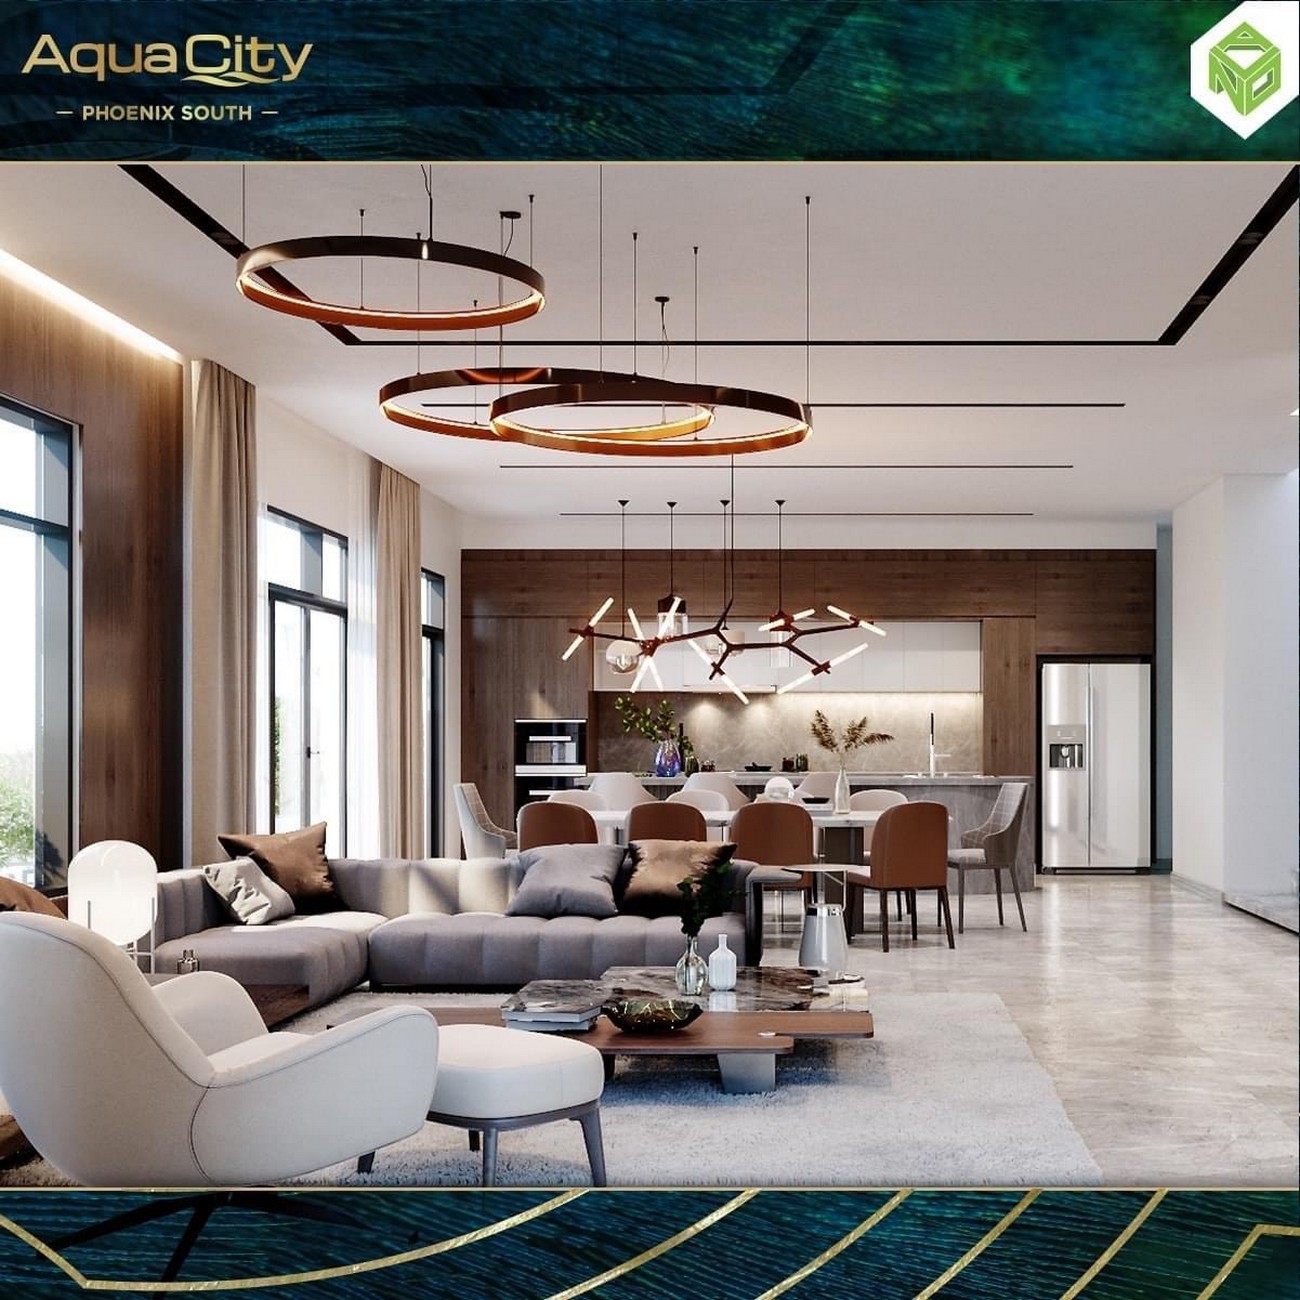 Phòng khách nhà mẫu dự án nhà phố Đảo Phượng Hoàng Aqua City (Phoenix South ) Đồng Nai chủ đầu tư Novaland